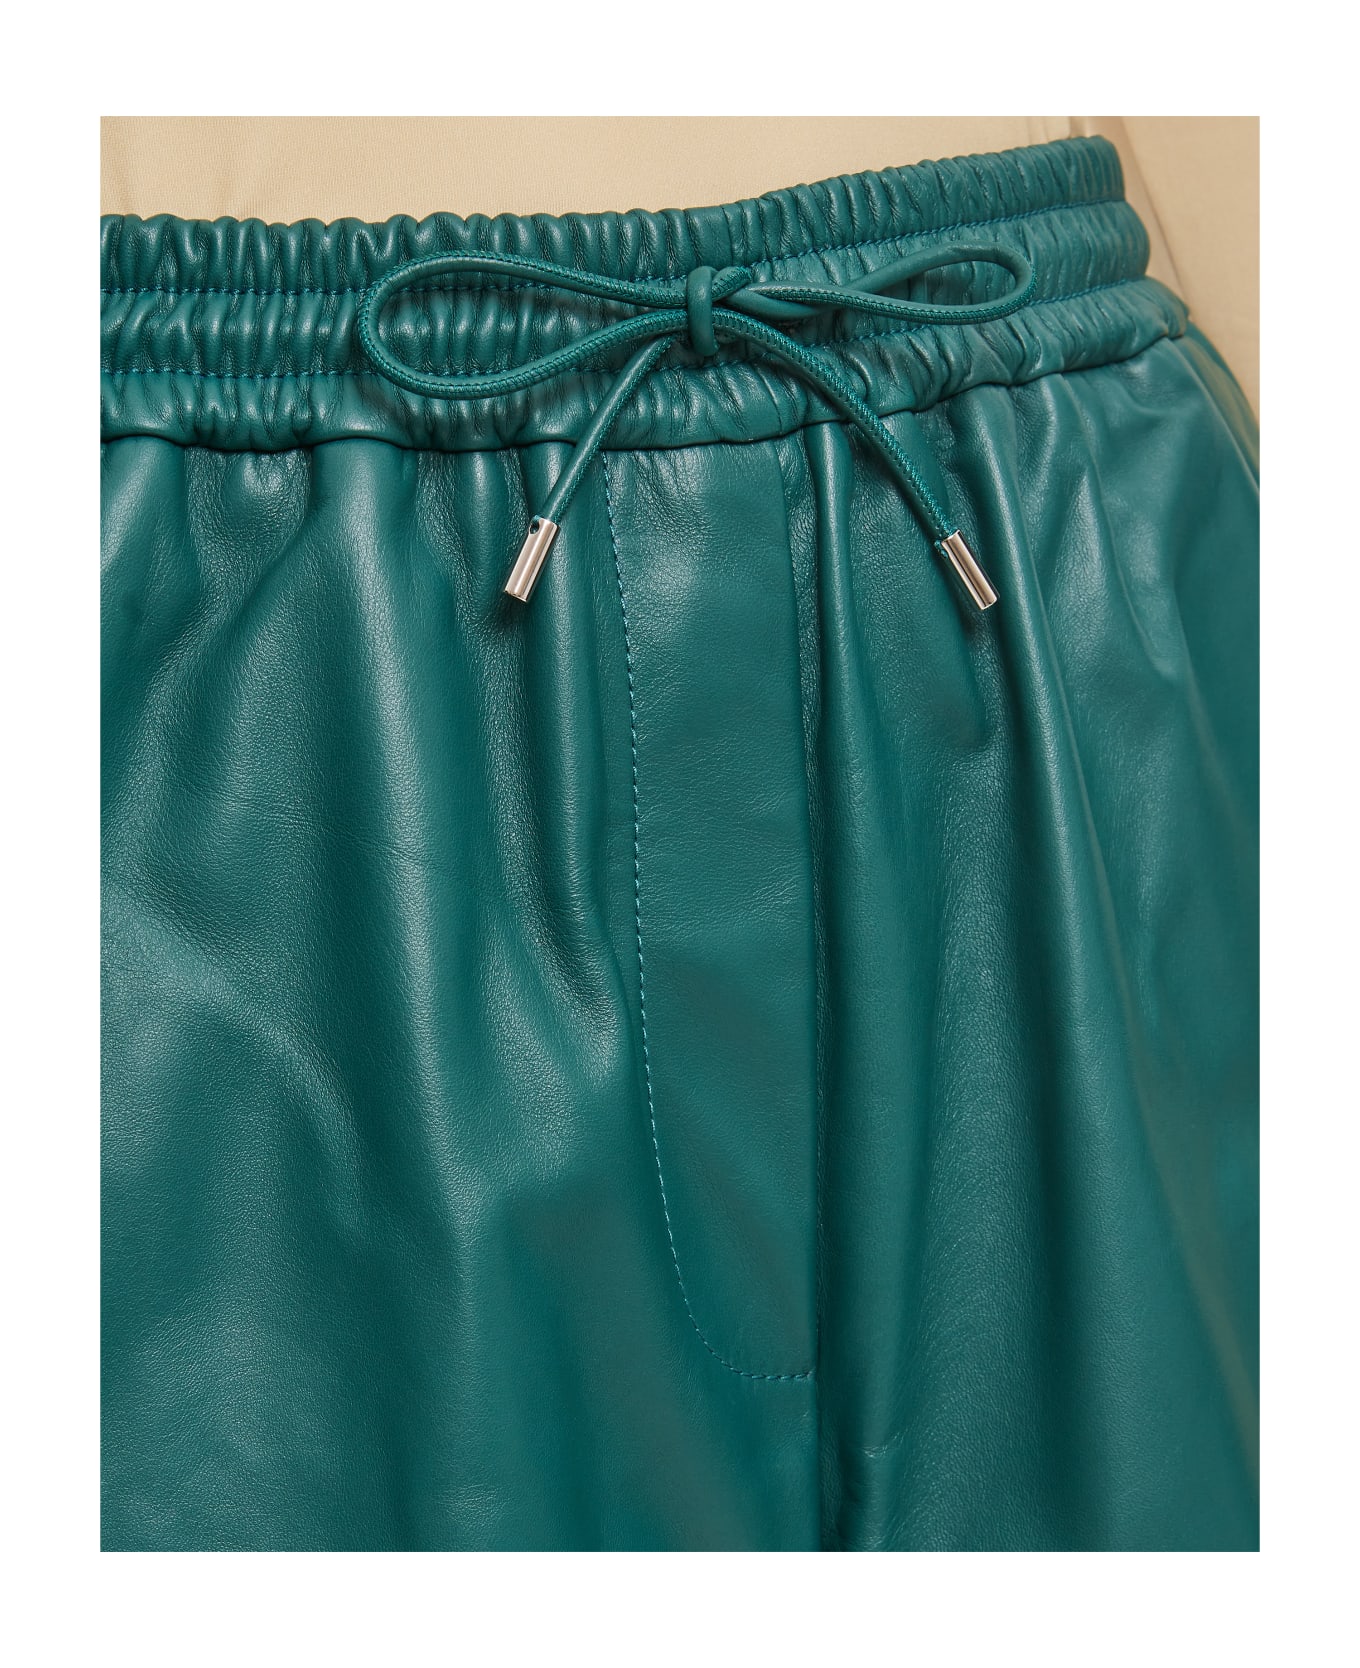 Loewe Elasticated Shorts - Green ショートパンツ